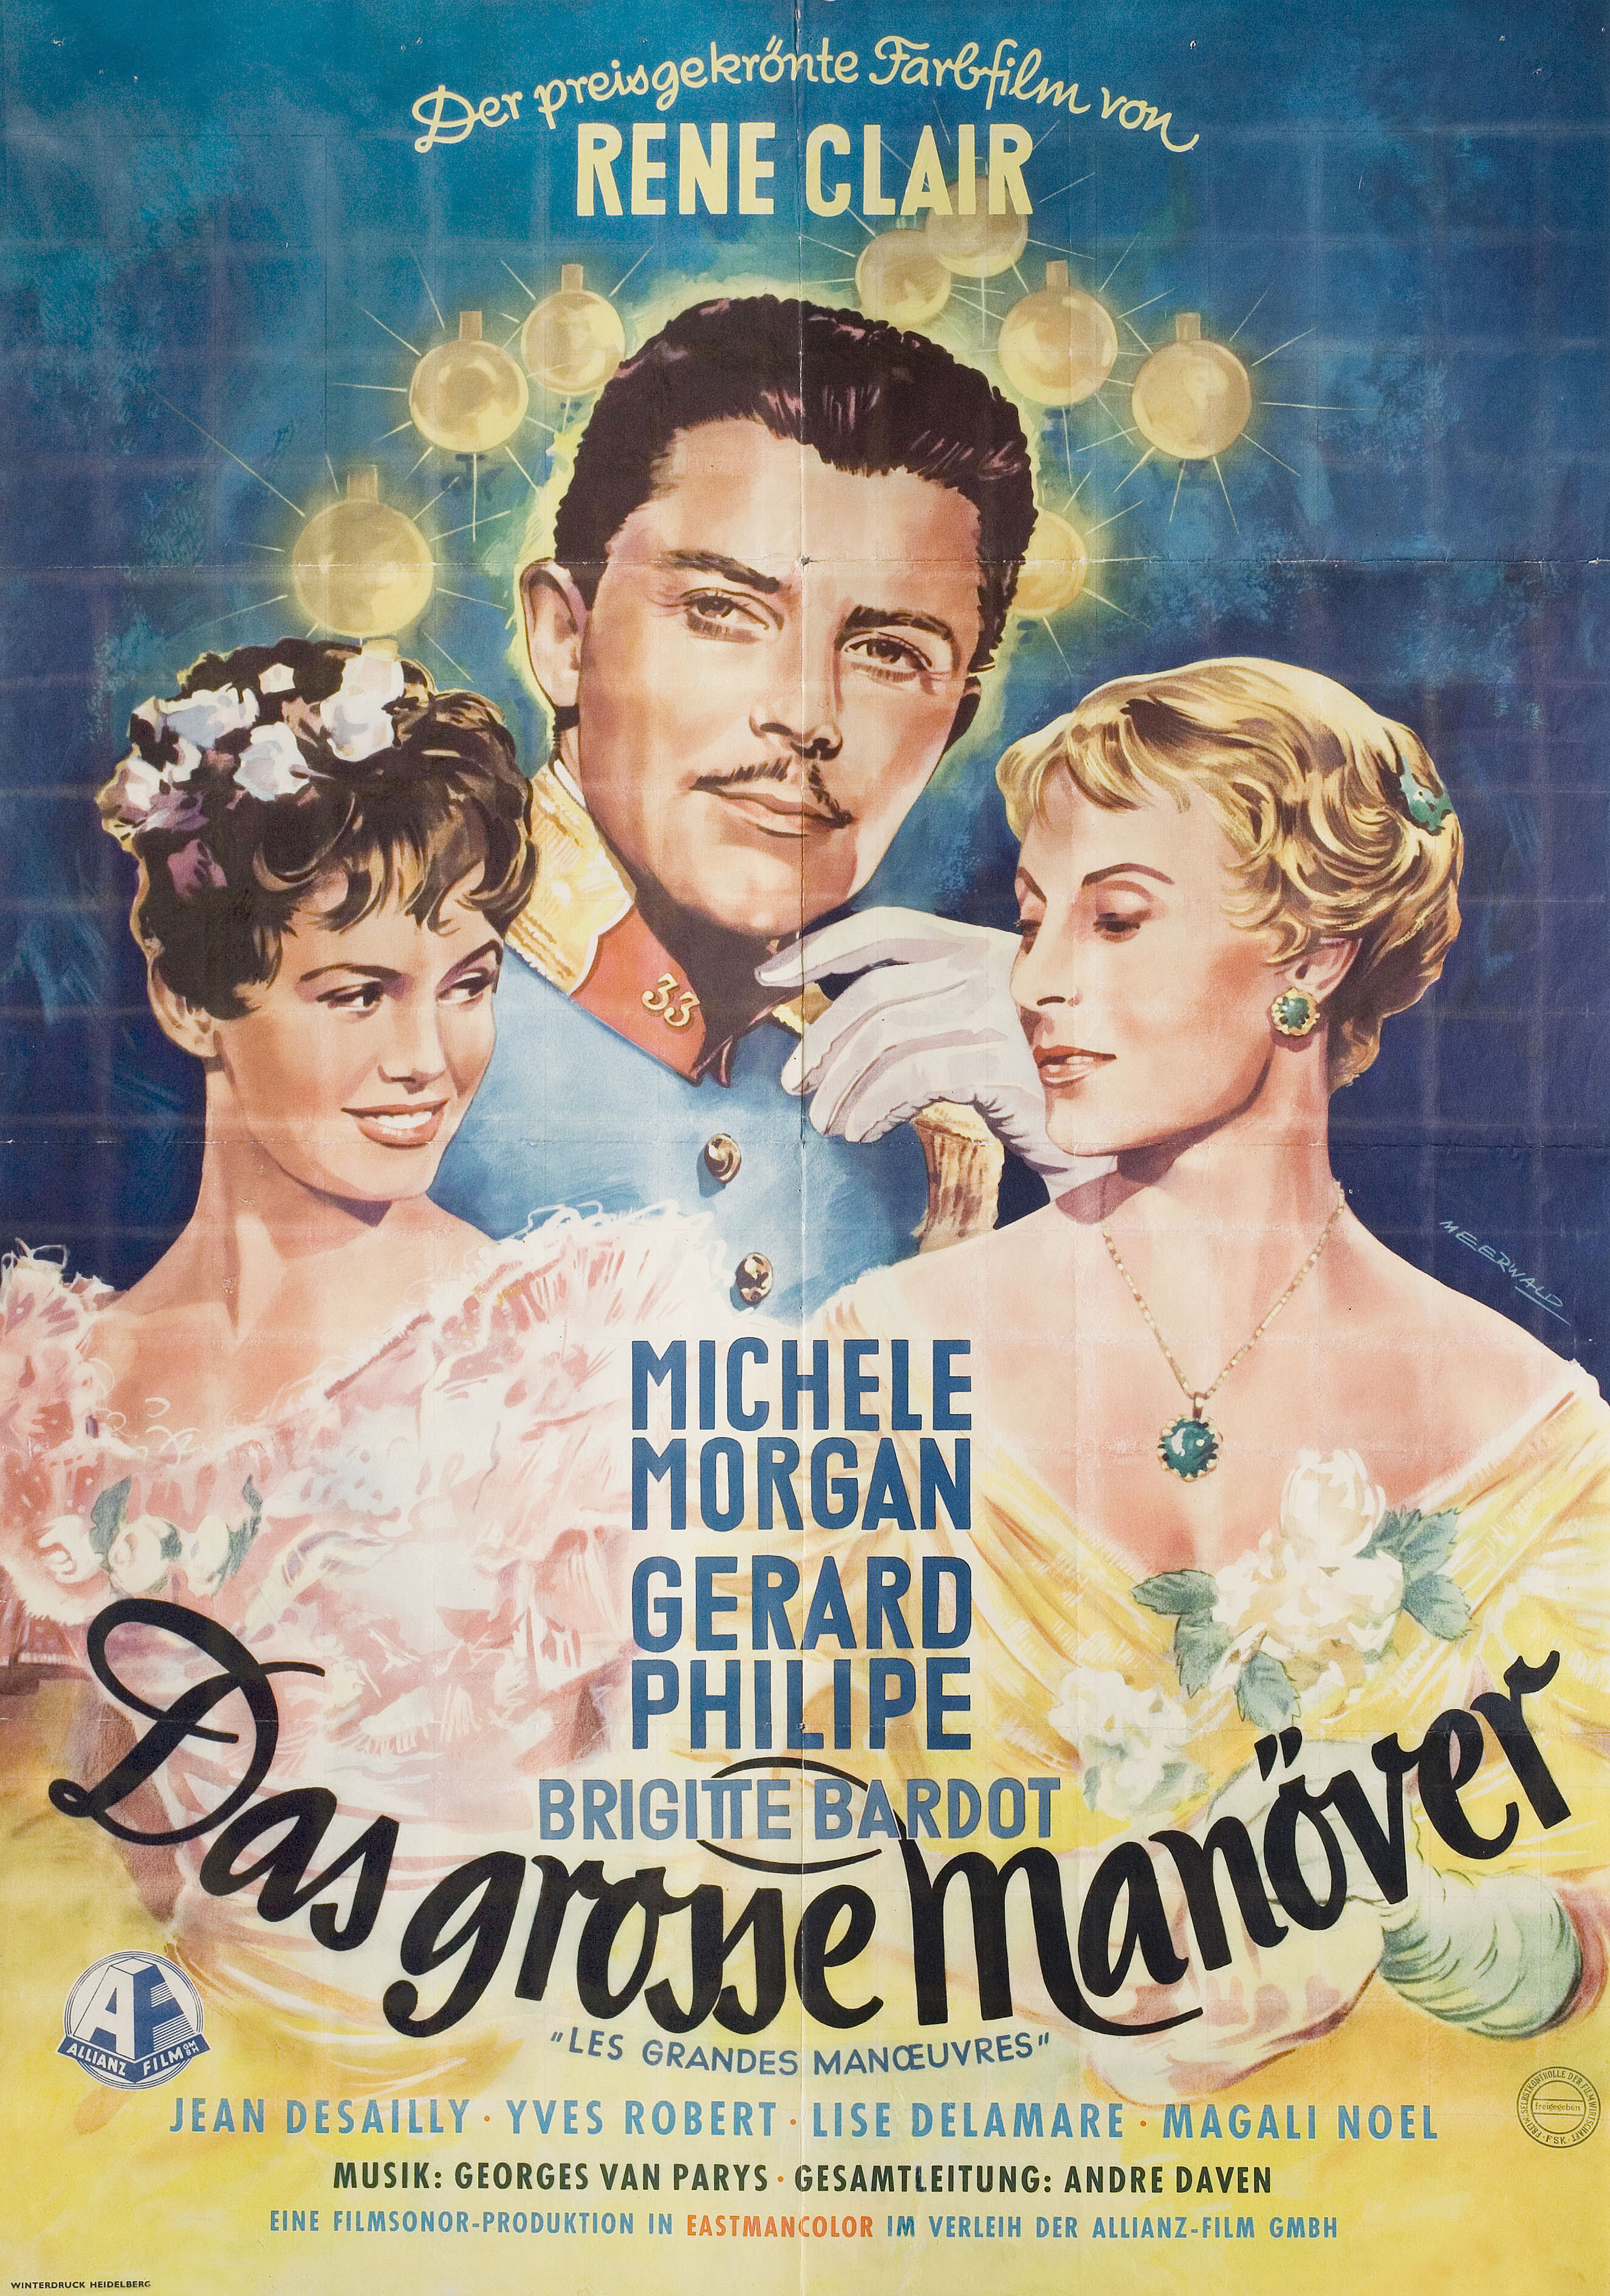 Большие манёвры (The Grand Maneuver, 1955), режиссёр Рене Клер, художественный постер к фильму (Германия, 1955 год), автор МеерВальд